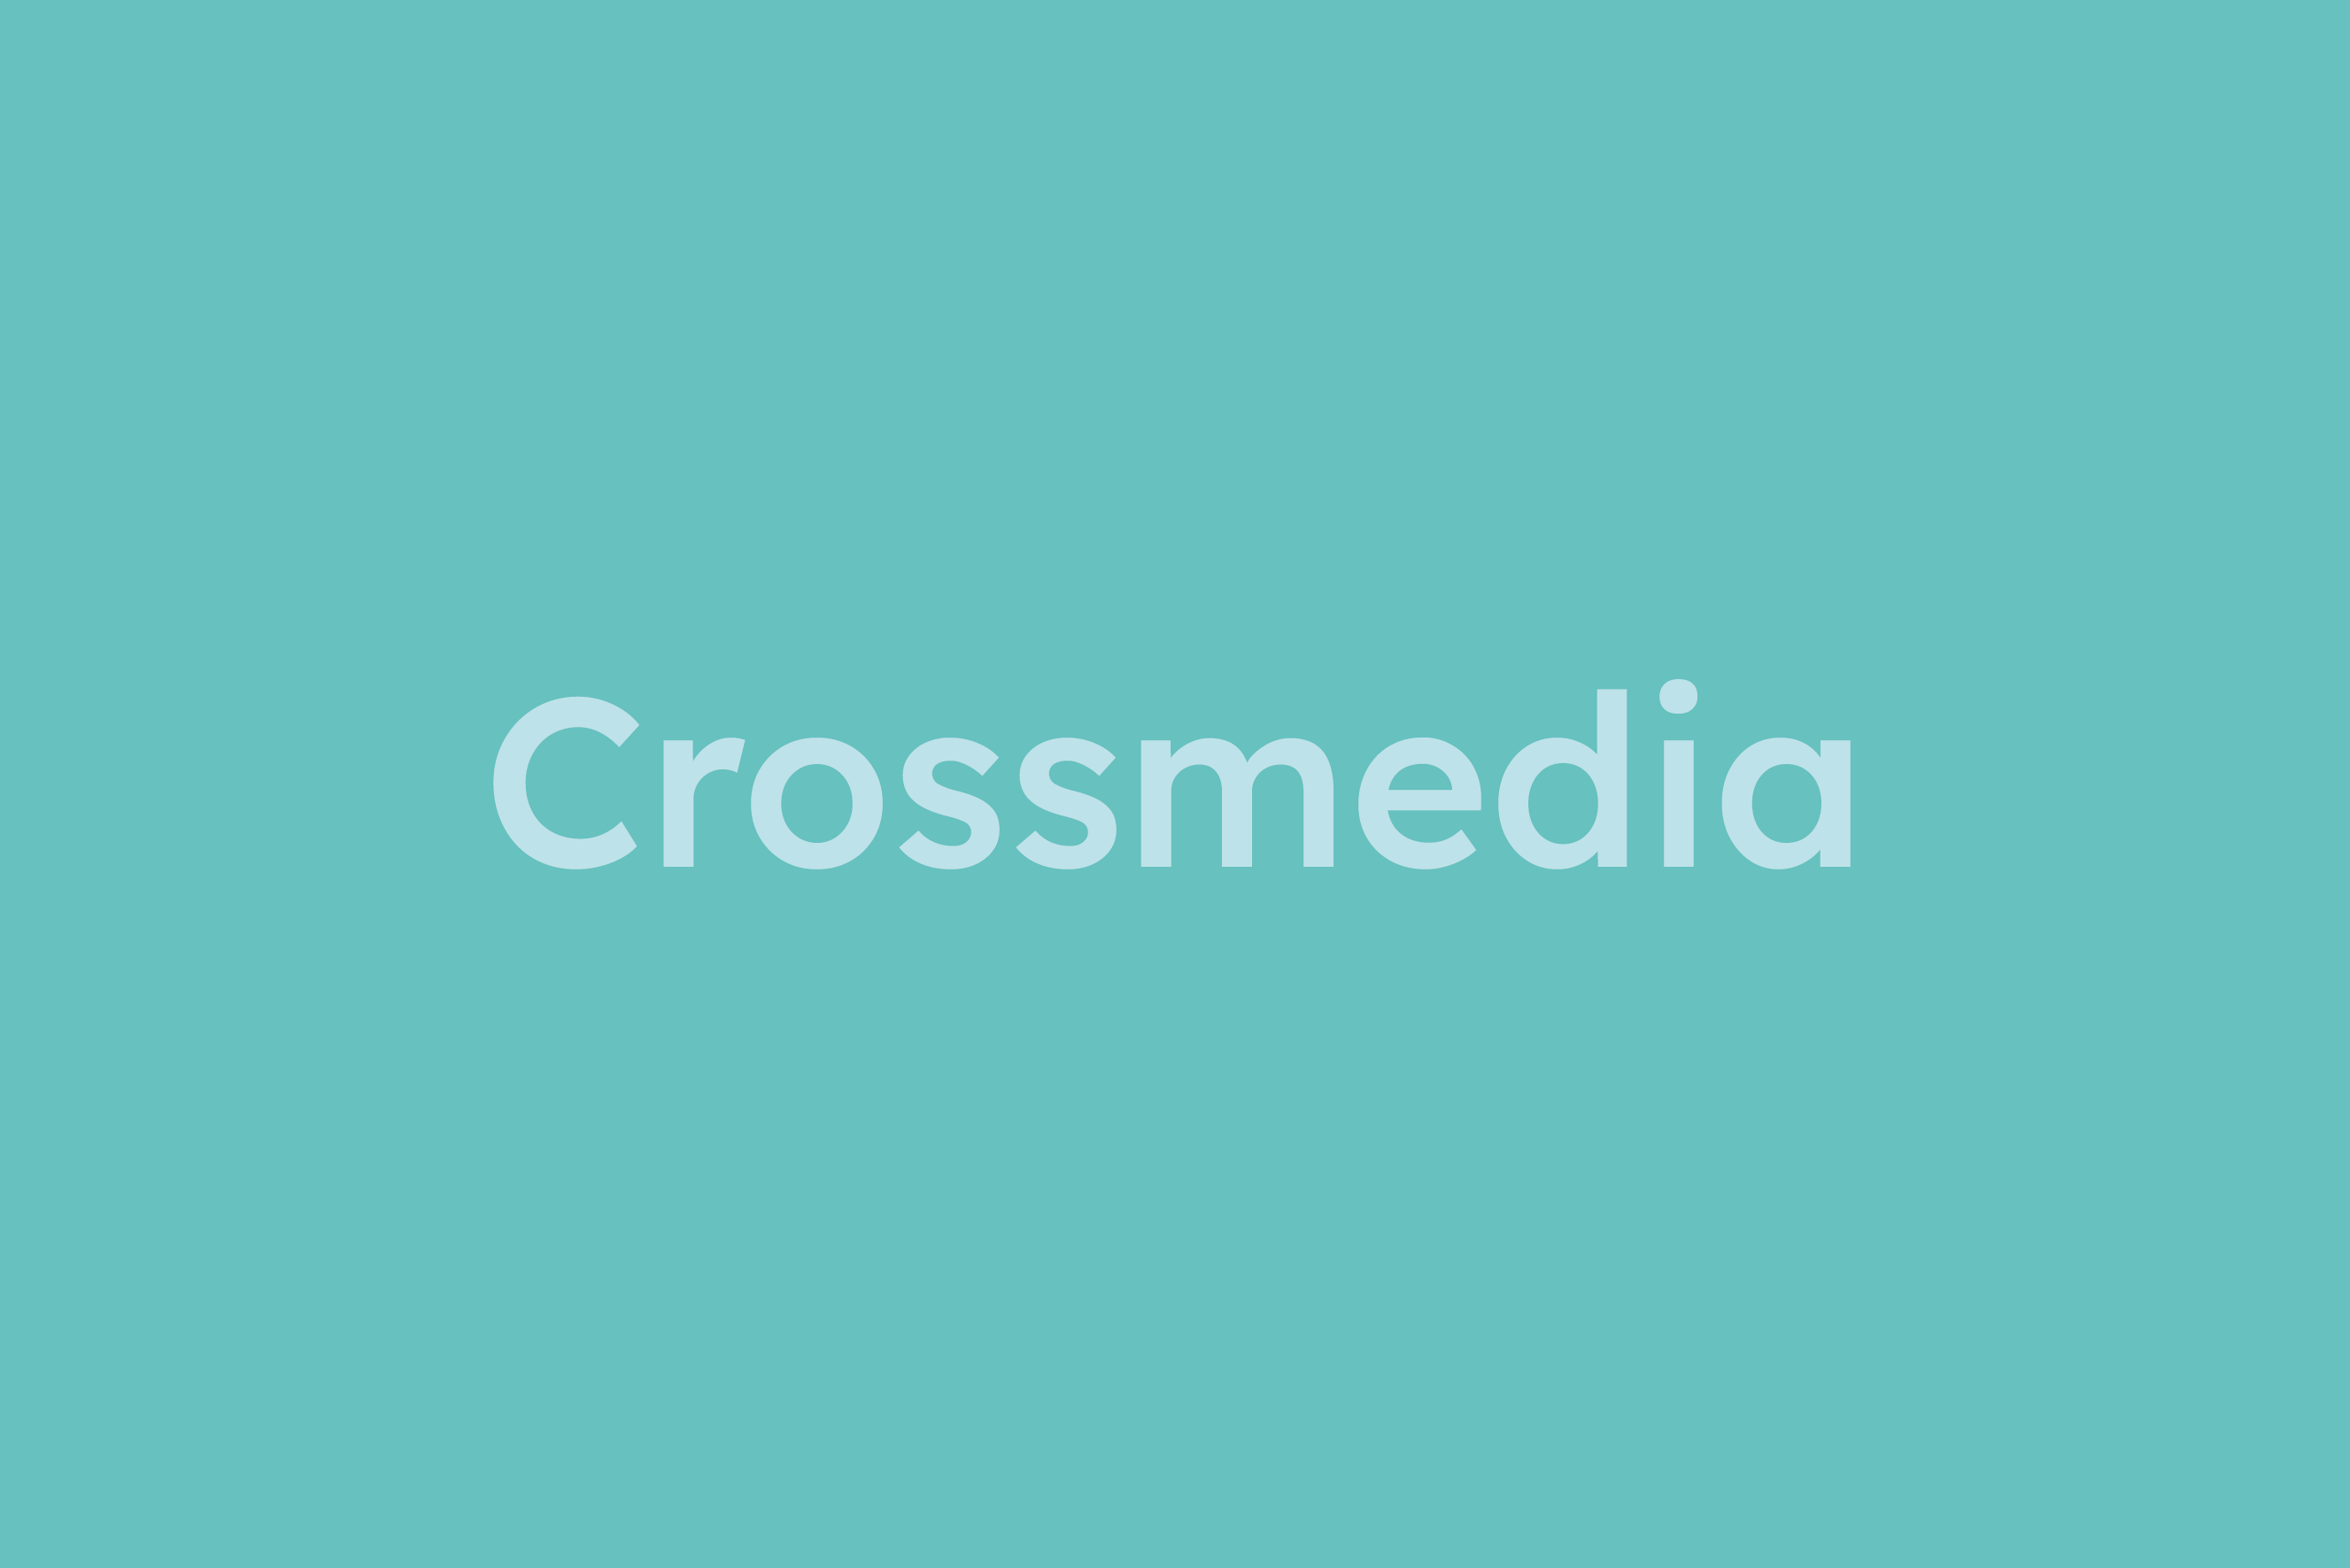 Crossmedia erklärt im Glossar von Campaign